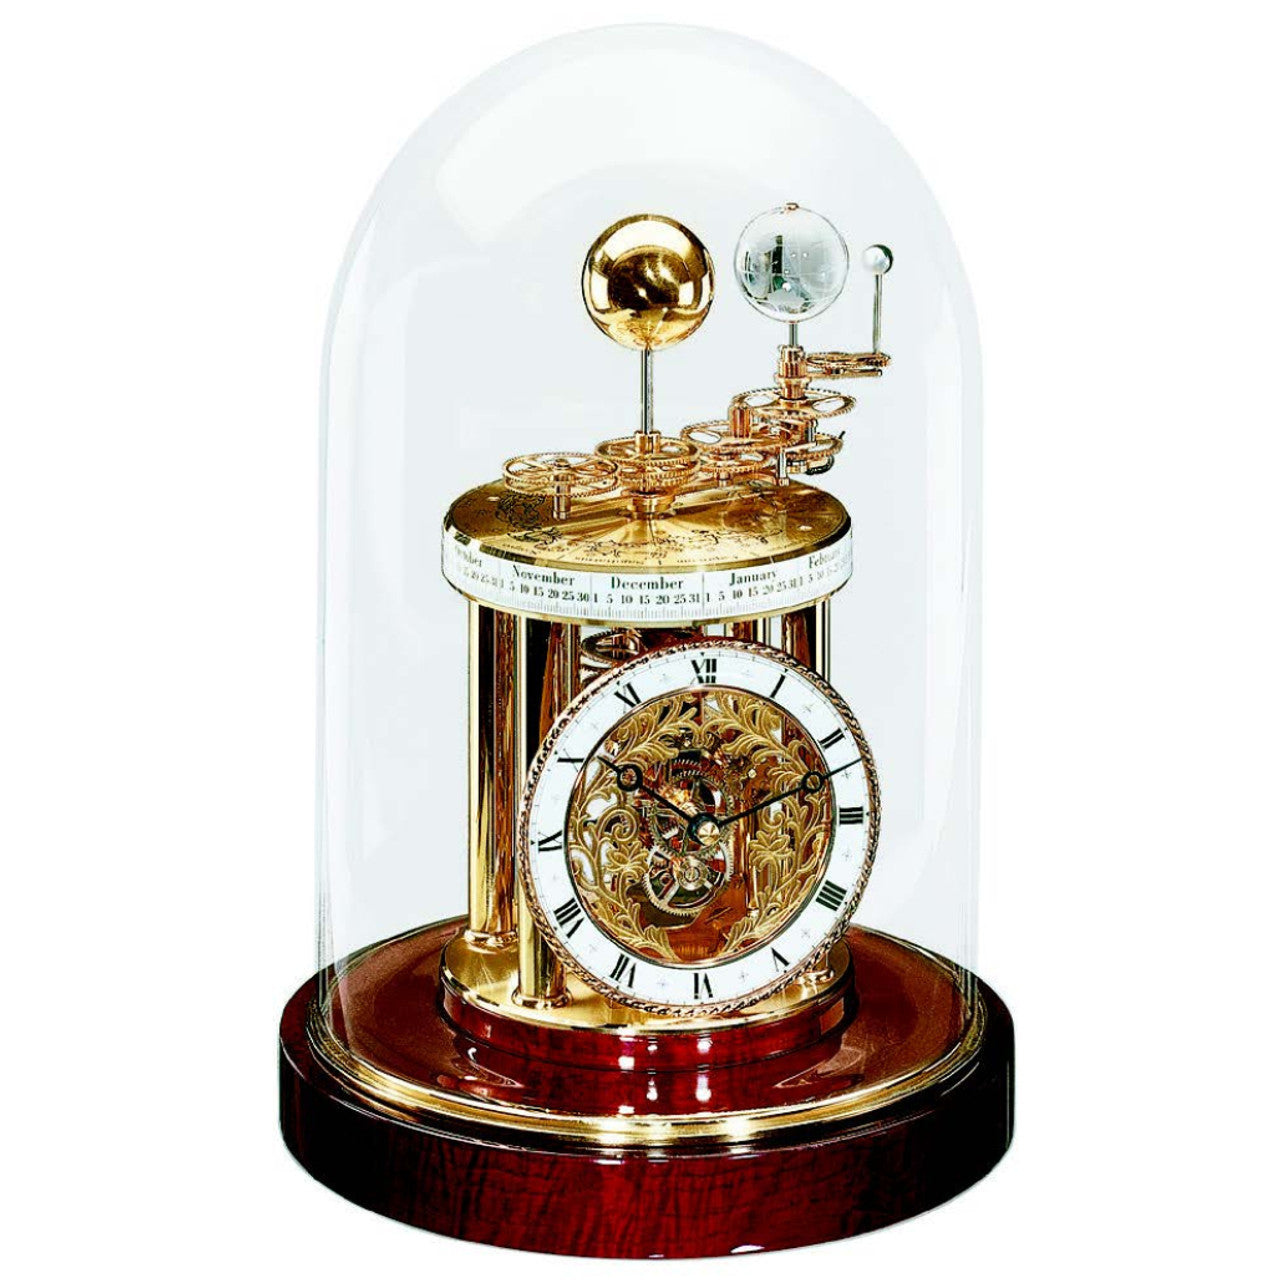 Sale - Hermle Astrolabium Quartz Mantel Clock - Mahogany - Slight Seconds